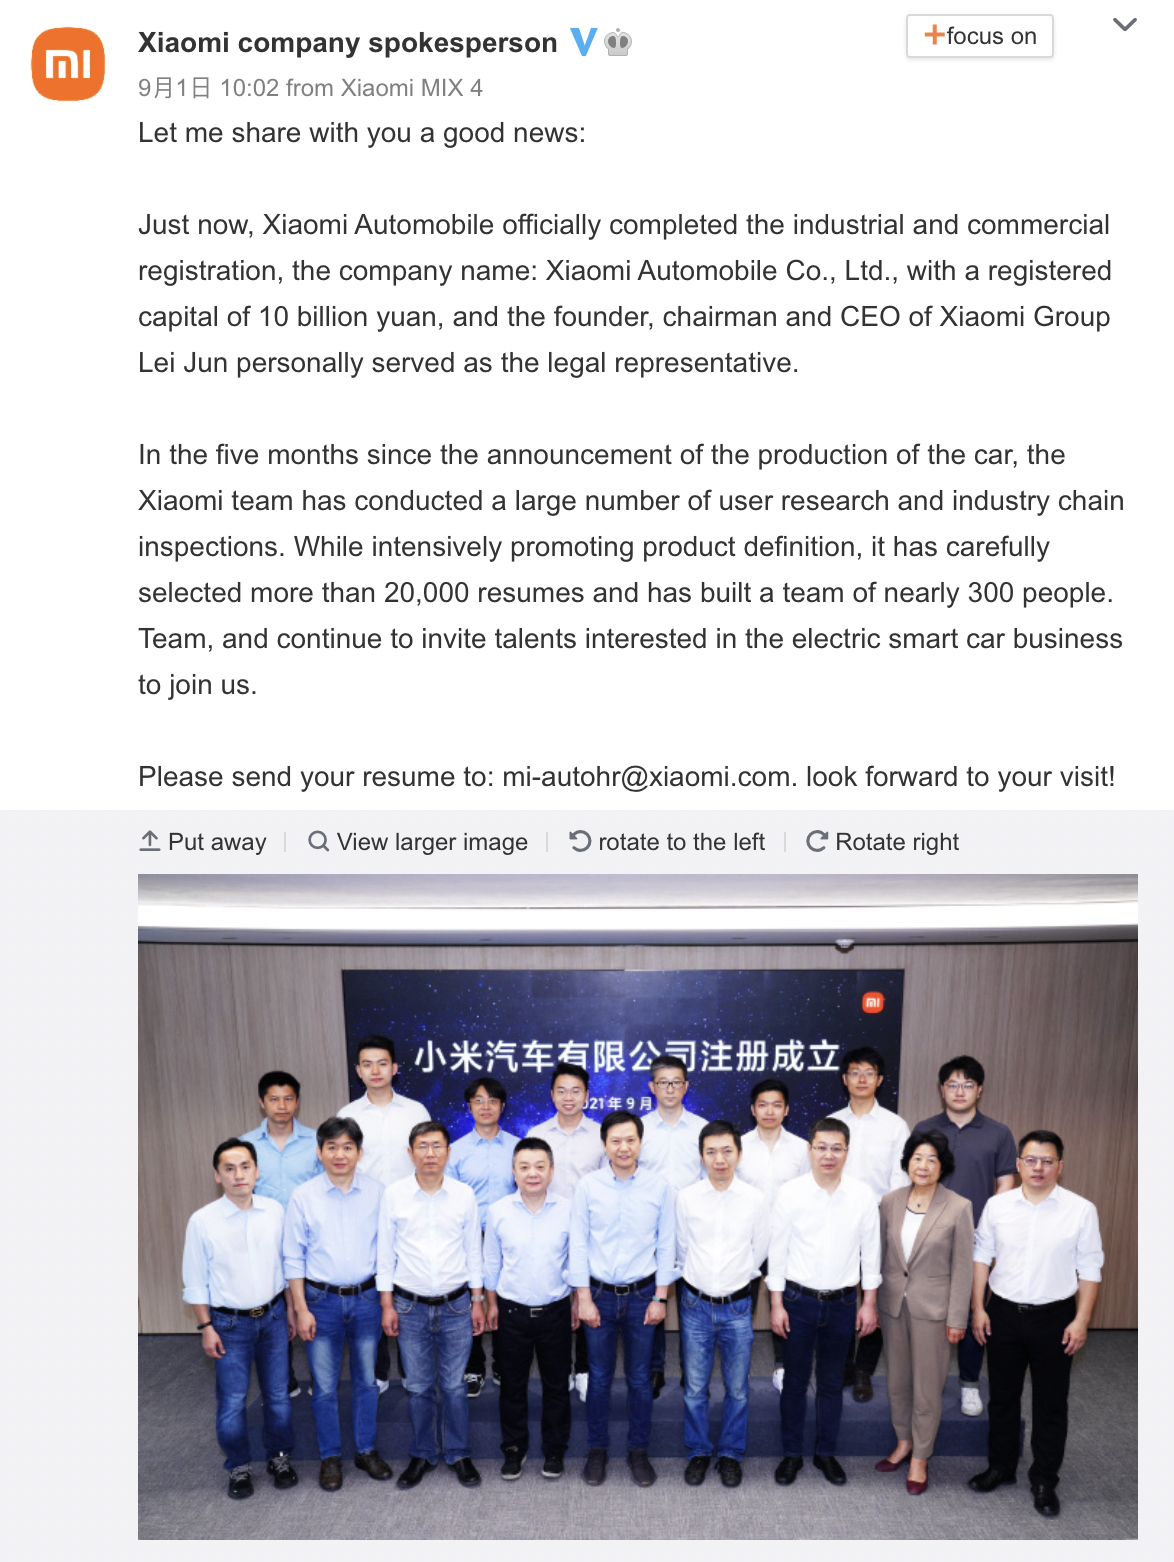 Xiaomi Automobile Co. Ltd. Registration Announcement